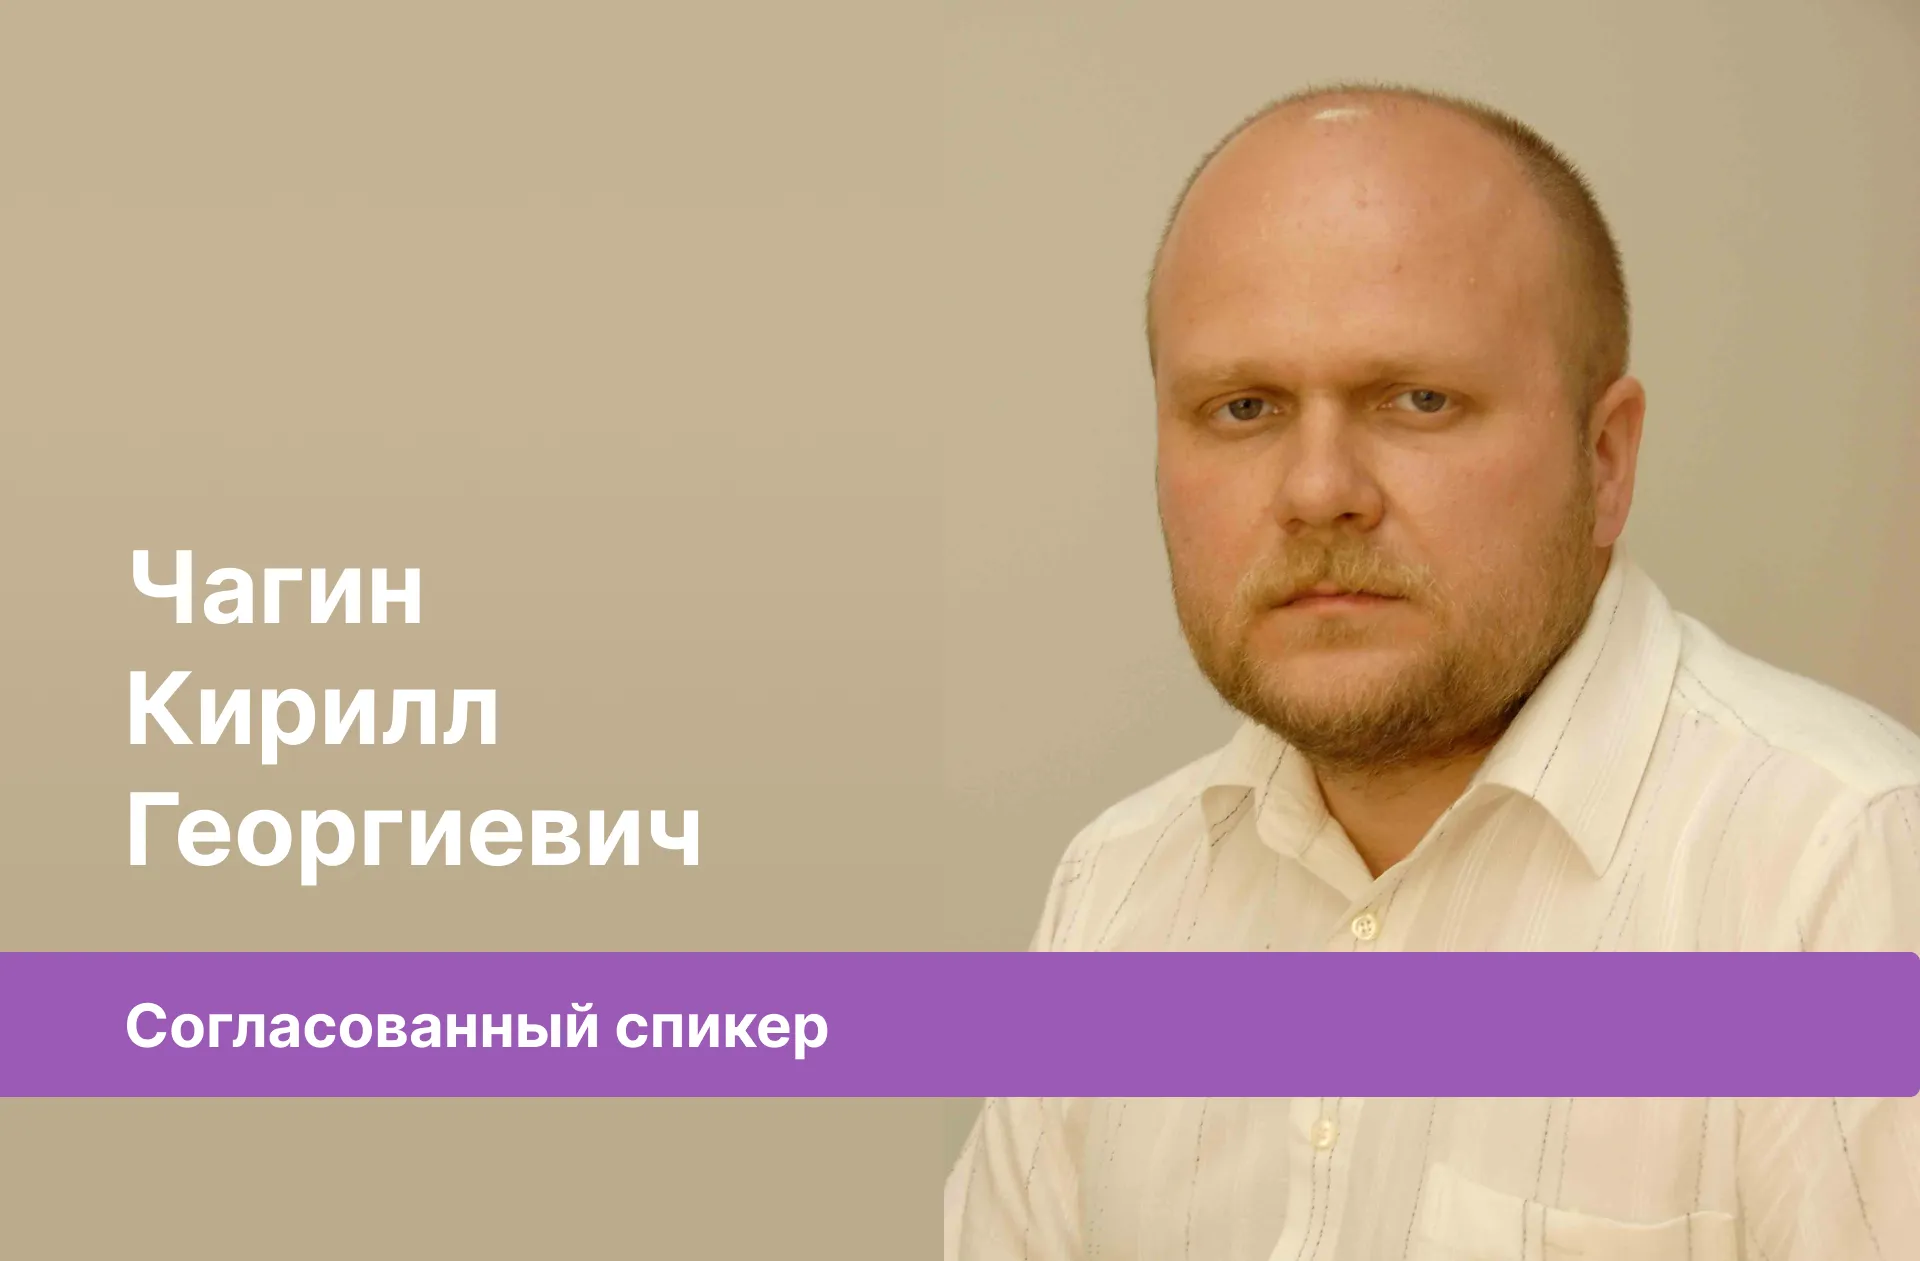 Чагин Кирилл Георгиевич — согласованный спикер